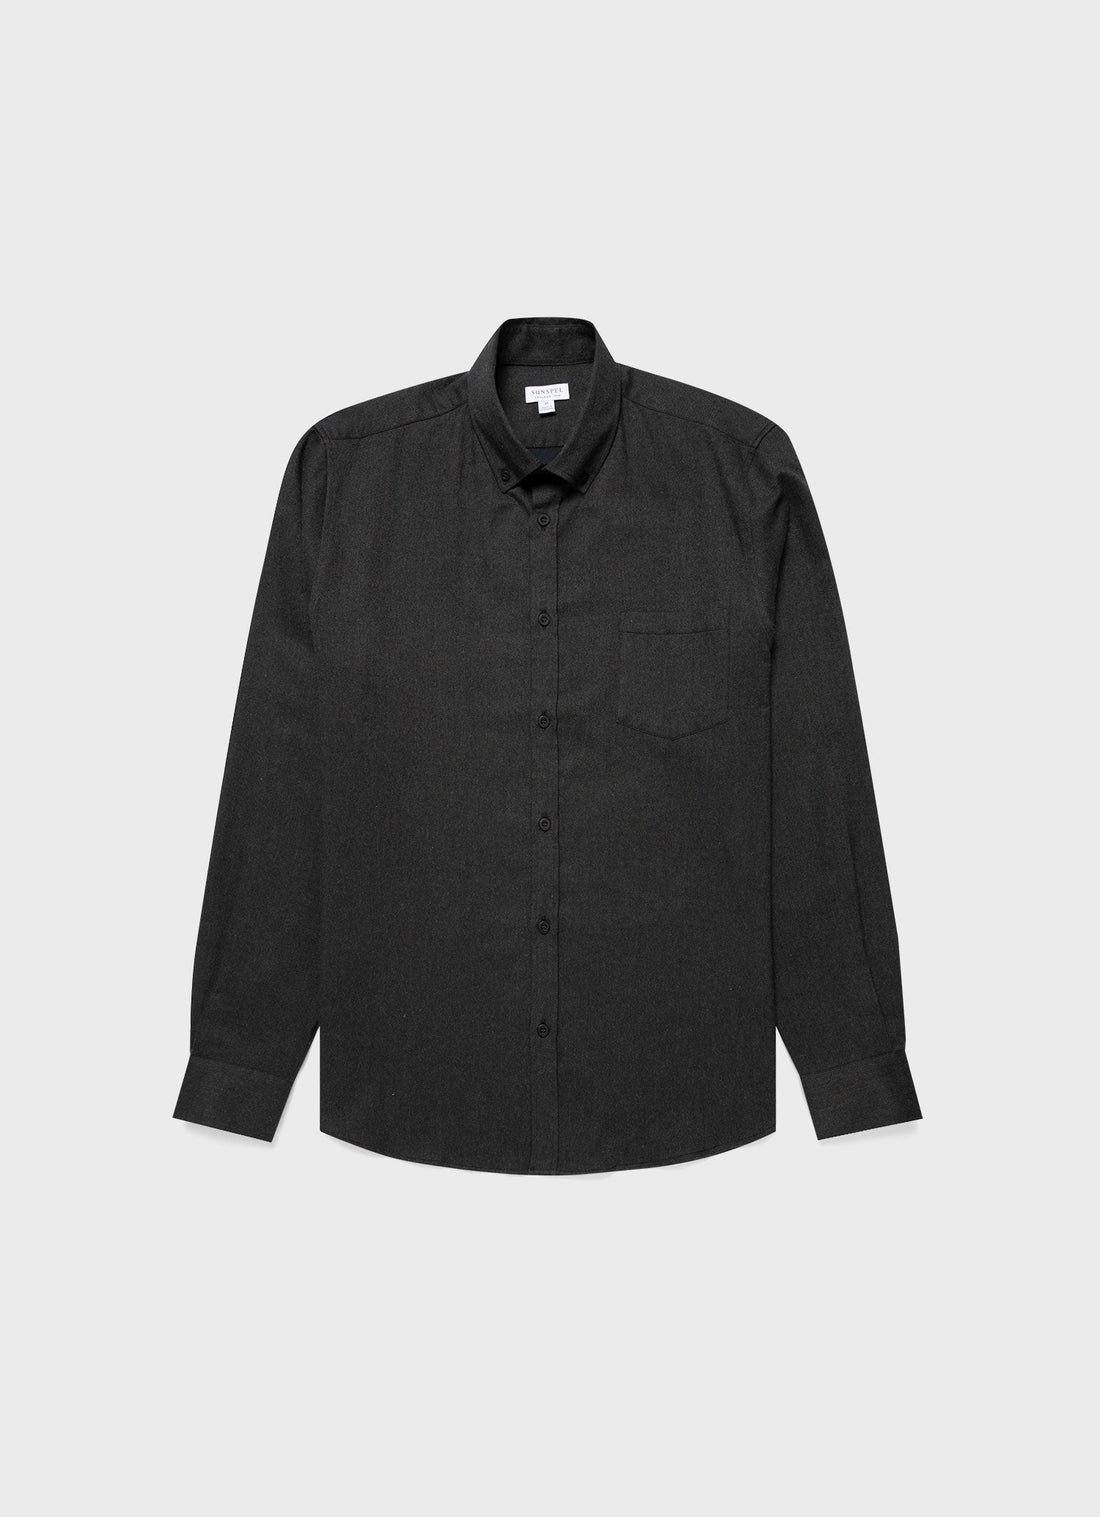 Men's Button Down Flannel Shirt in Dark Moss Melange